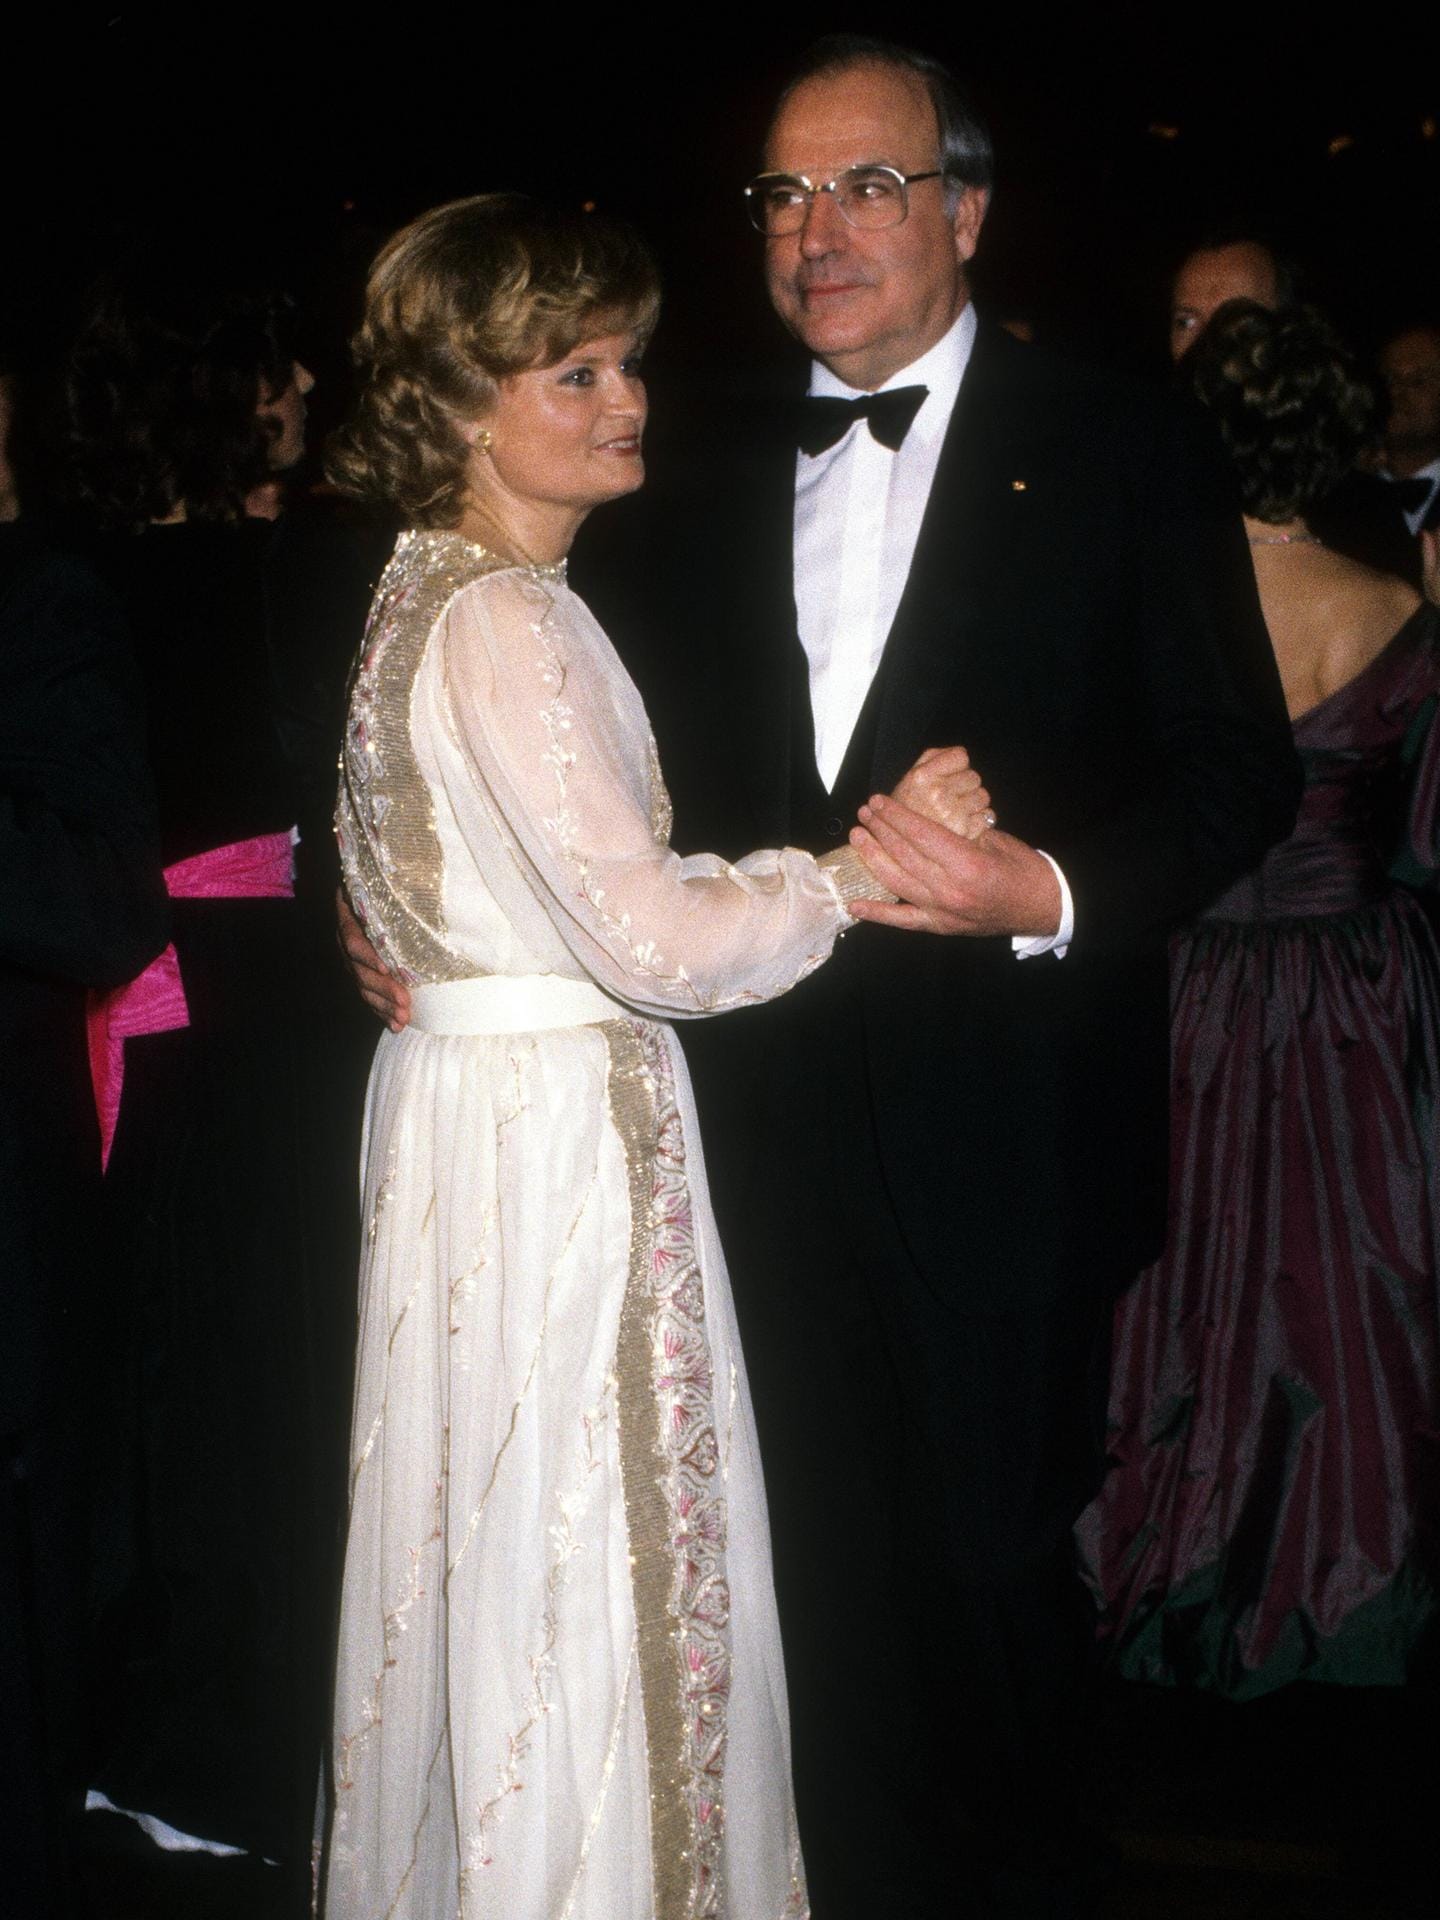 Ende der Sechzigerjahre wurde Helmut Kohl zum Ministerpräsident des Landes Rheinland-Pfalz gewählt, Hannelore war mit 36 Jahren die jüngste "Landesmutter" in Deutschland.